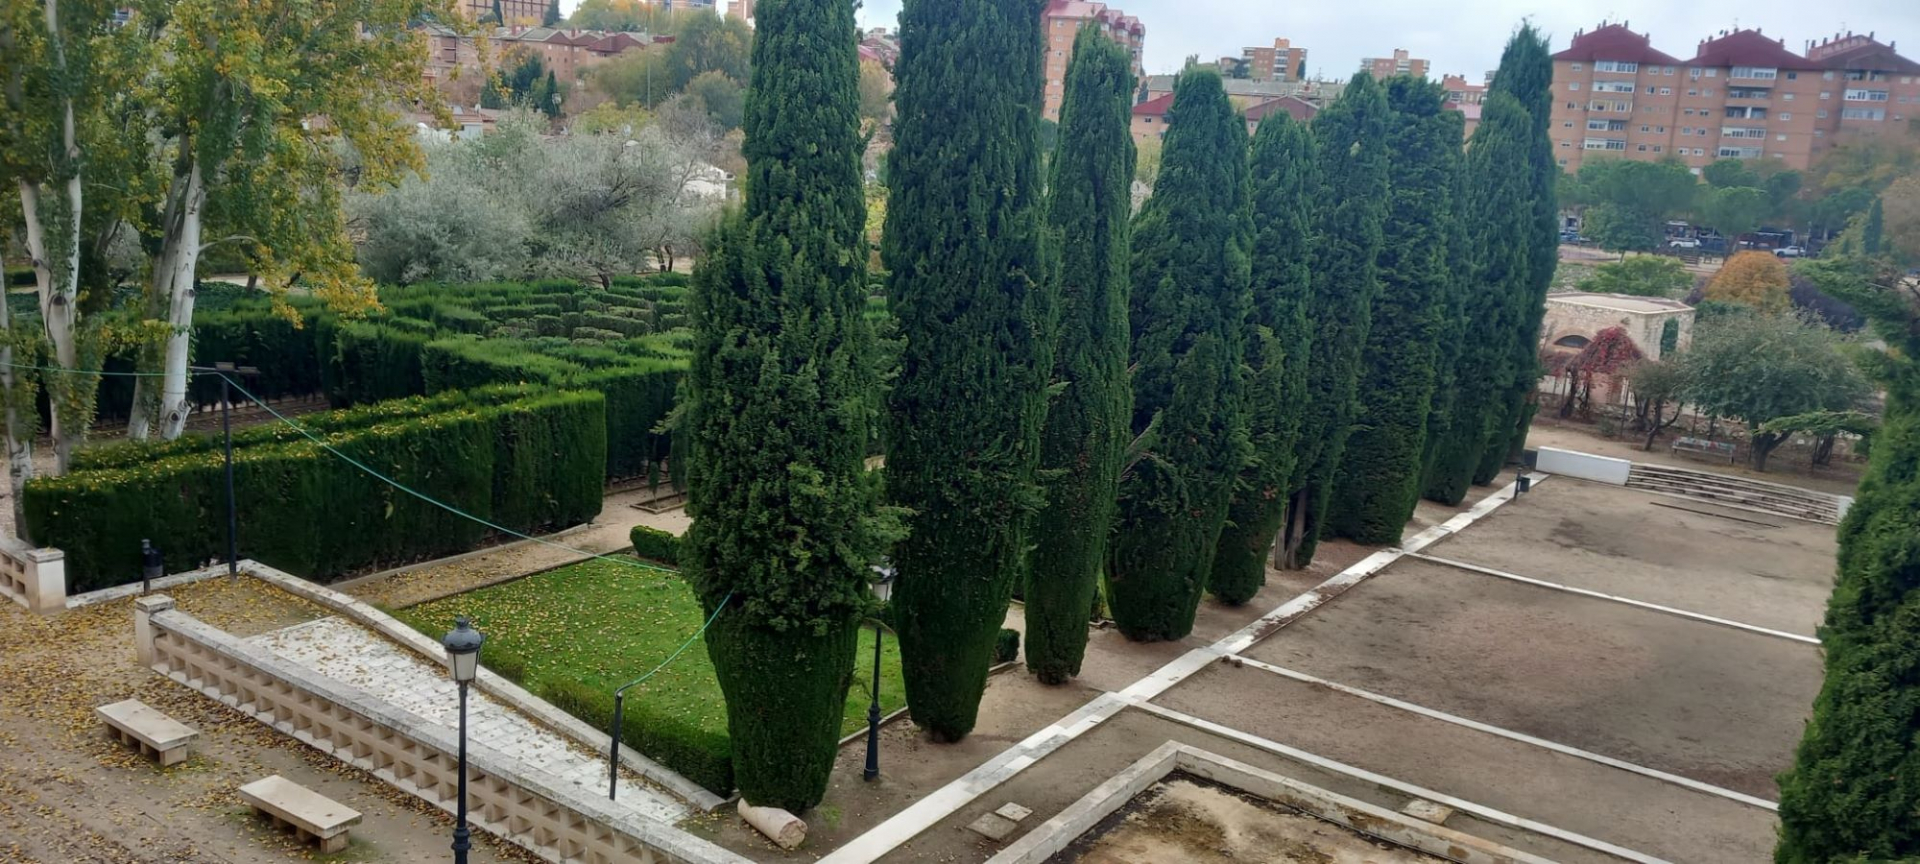 Los jardines del Palacio del Infantado podrían convertirse en jardín botánico o jardín botánico.